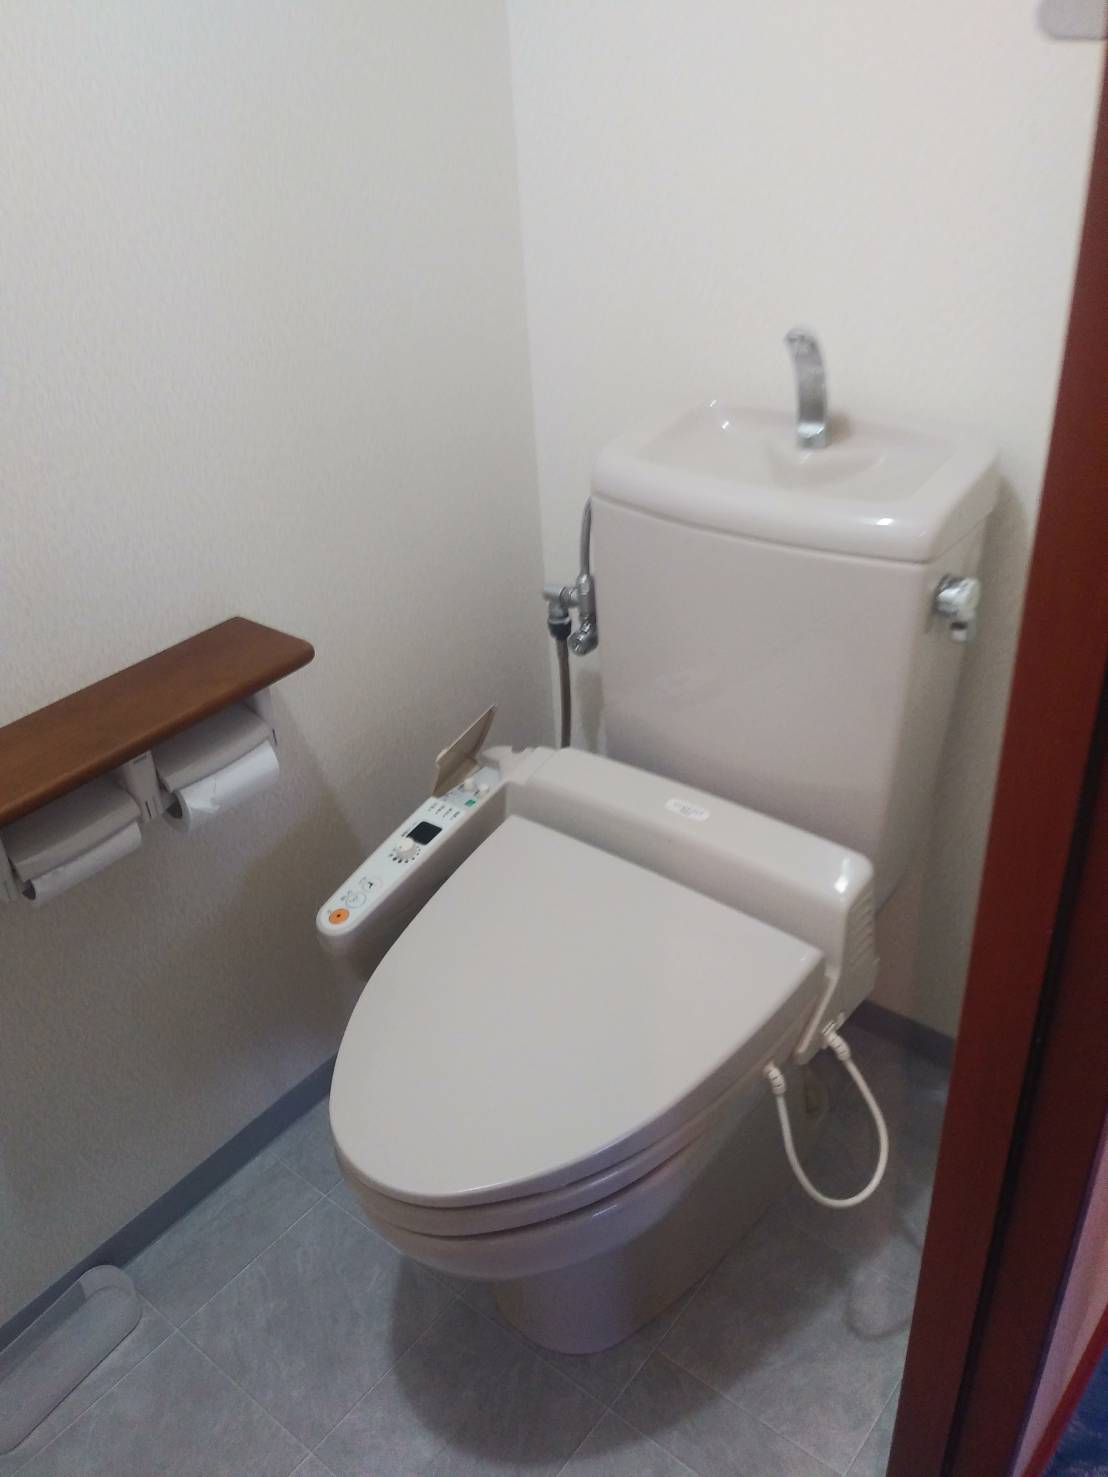 トイレのよくある故障10選と 修理方法について水道屋が解説 名古屋の水漏れ修理なら中部水道修理株式会社